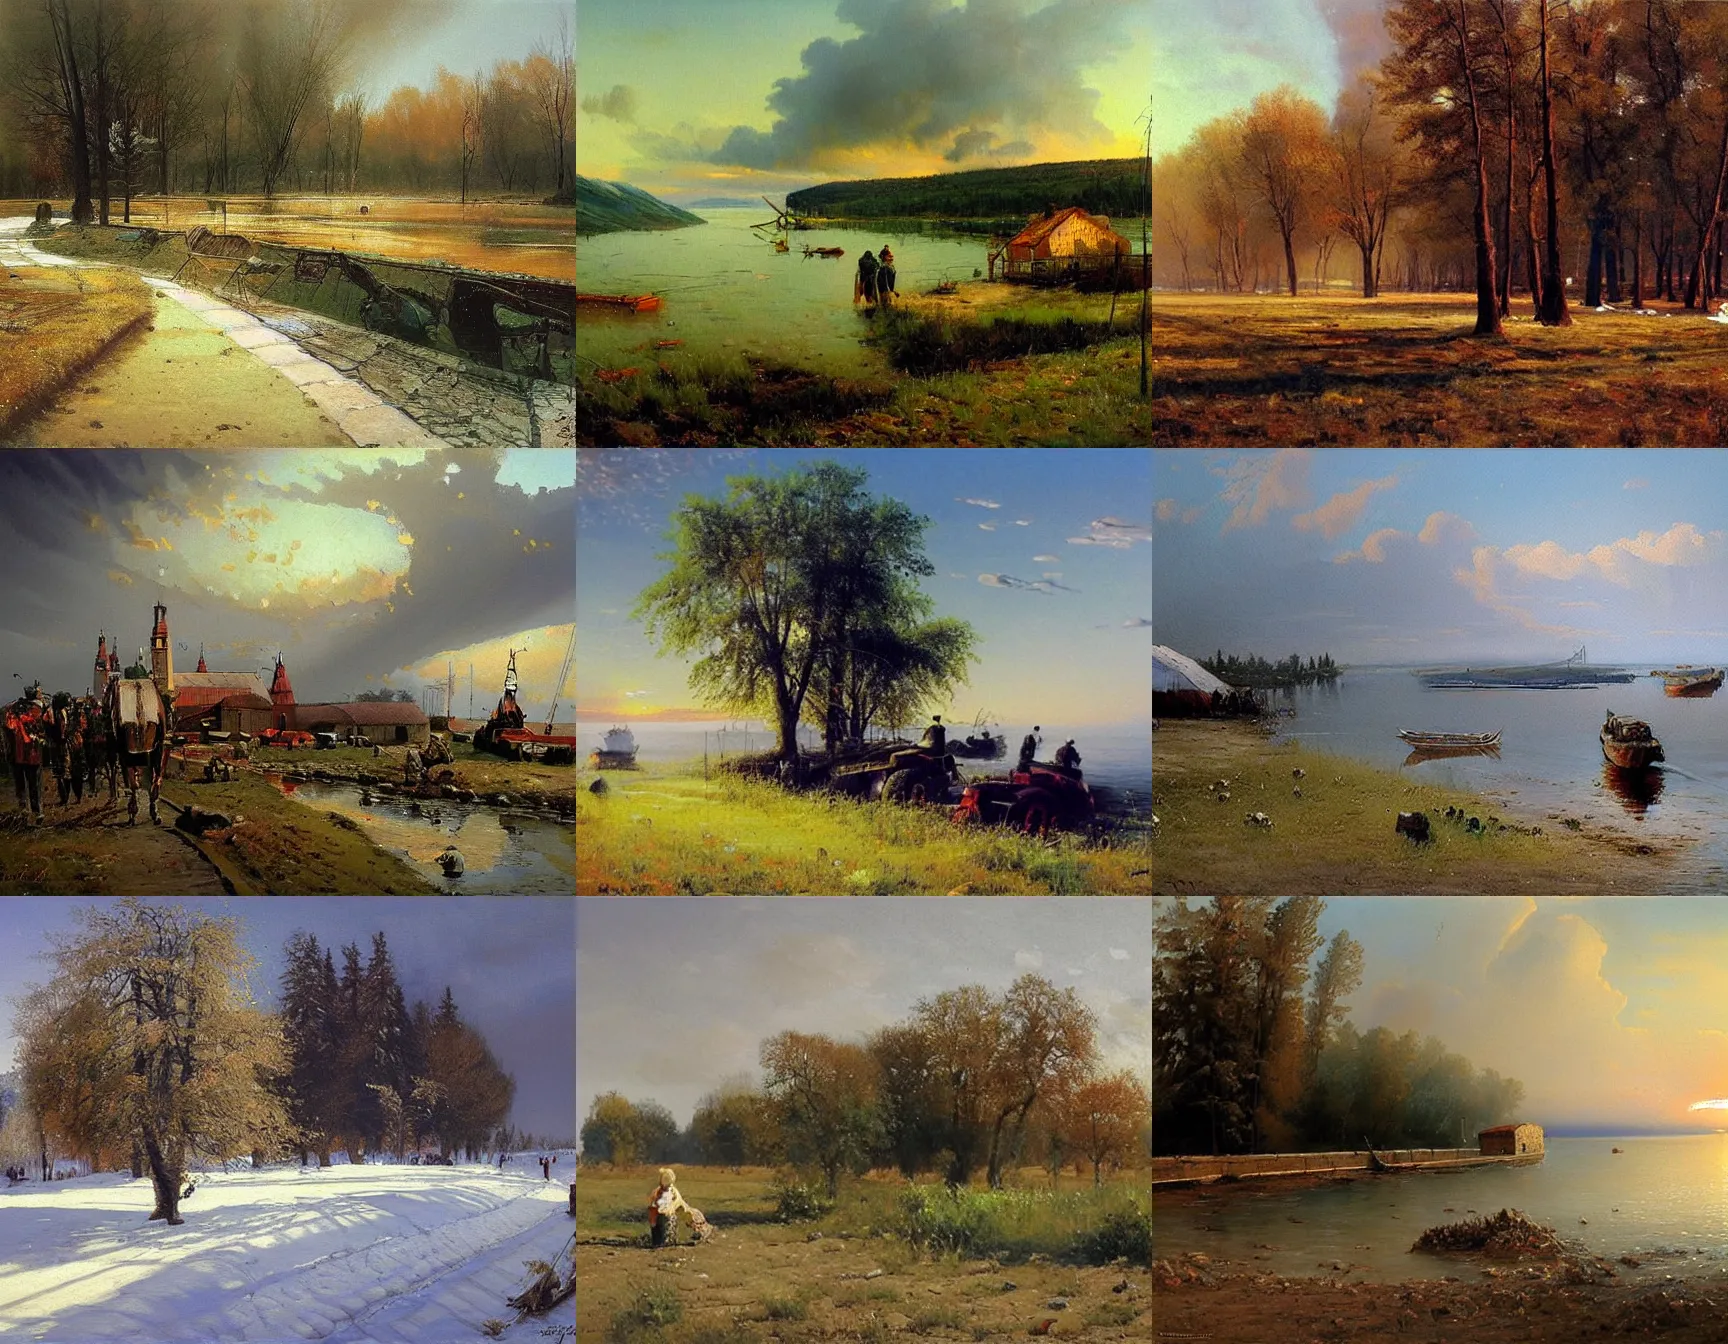 Prompt: painting by fyodor vasilyev